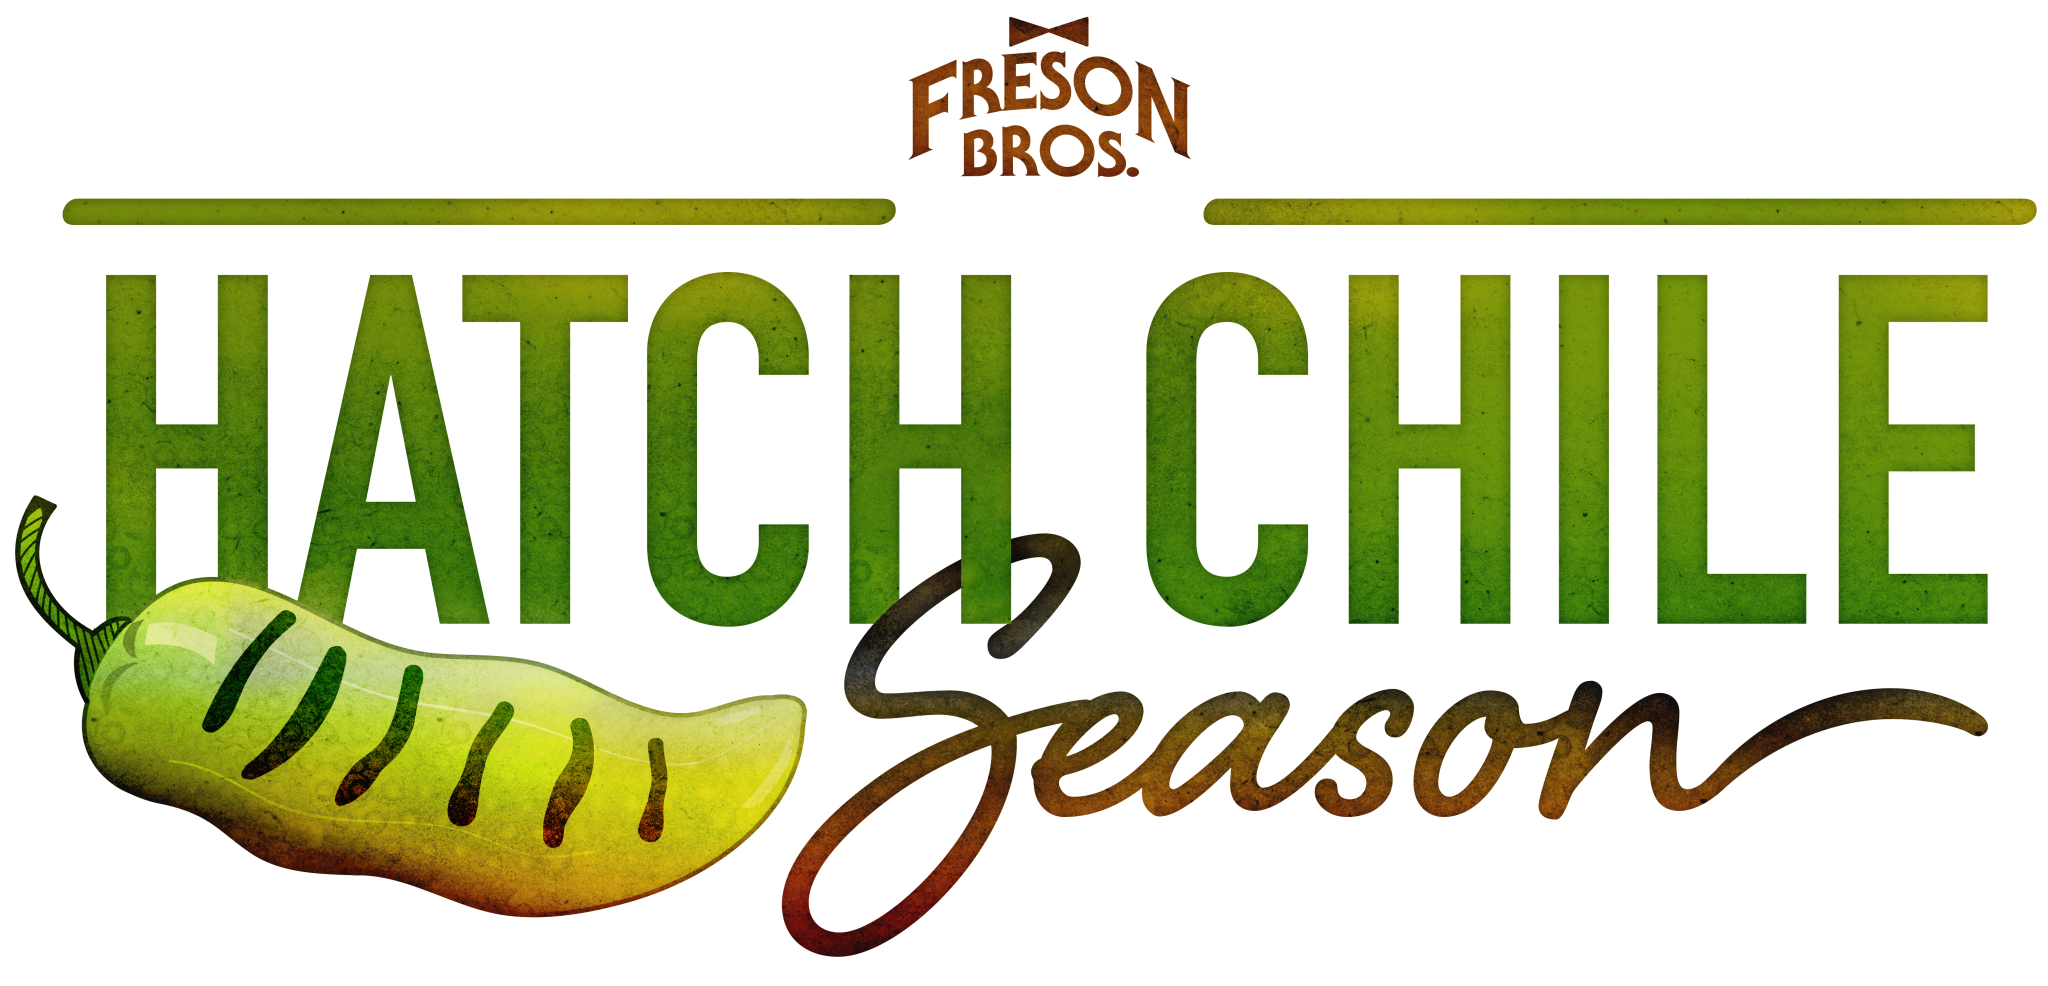 Hatch Chile Season Freson Bros. Fresh Market